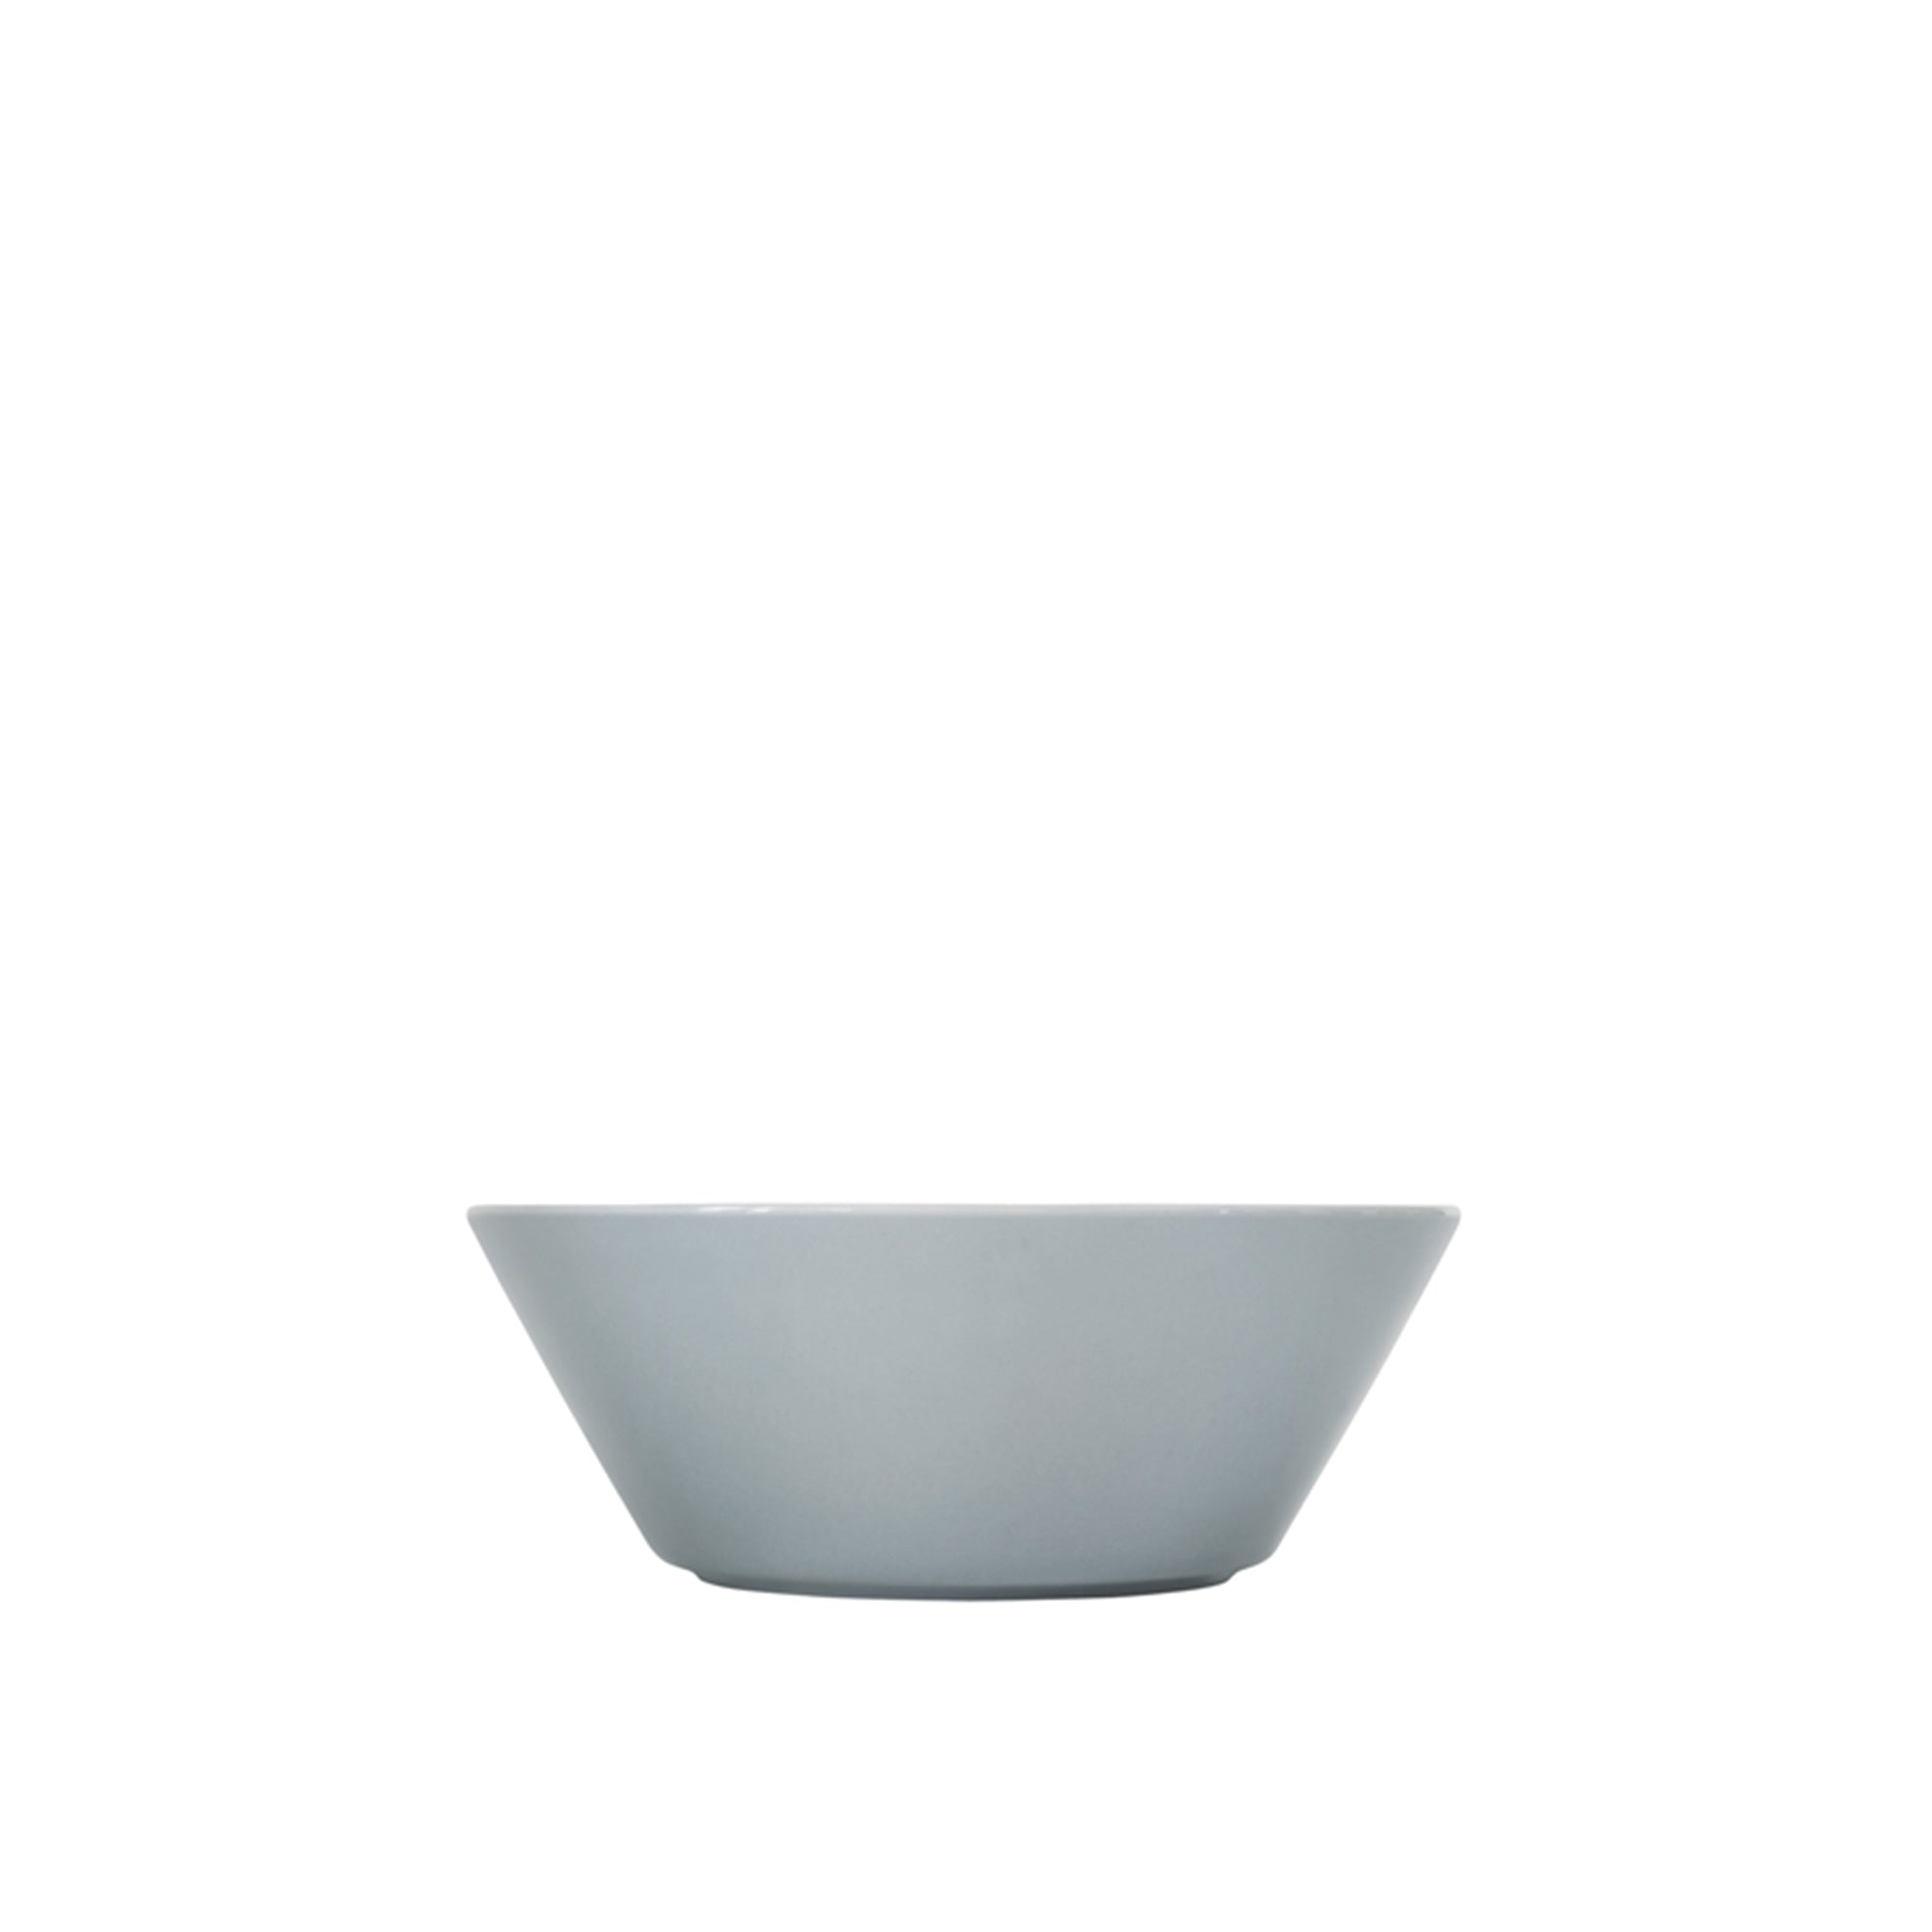 Teema Pearl Grey Bowl, 6"